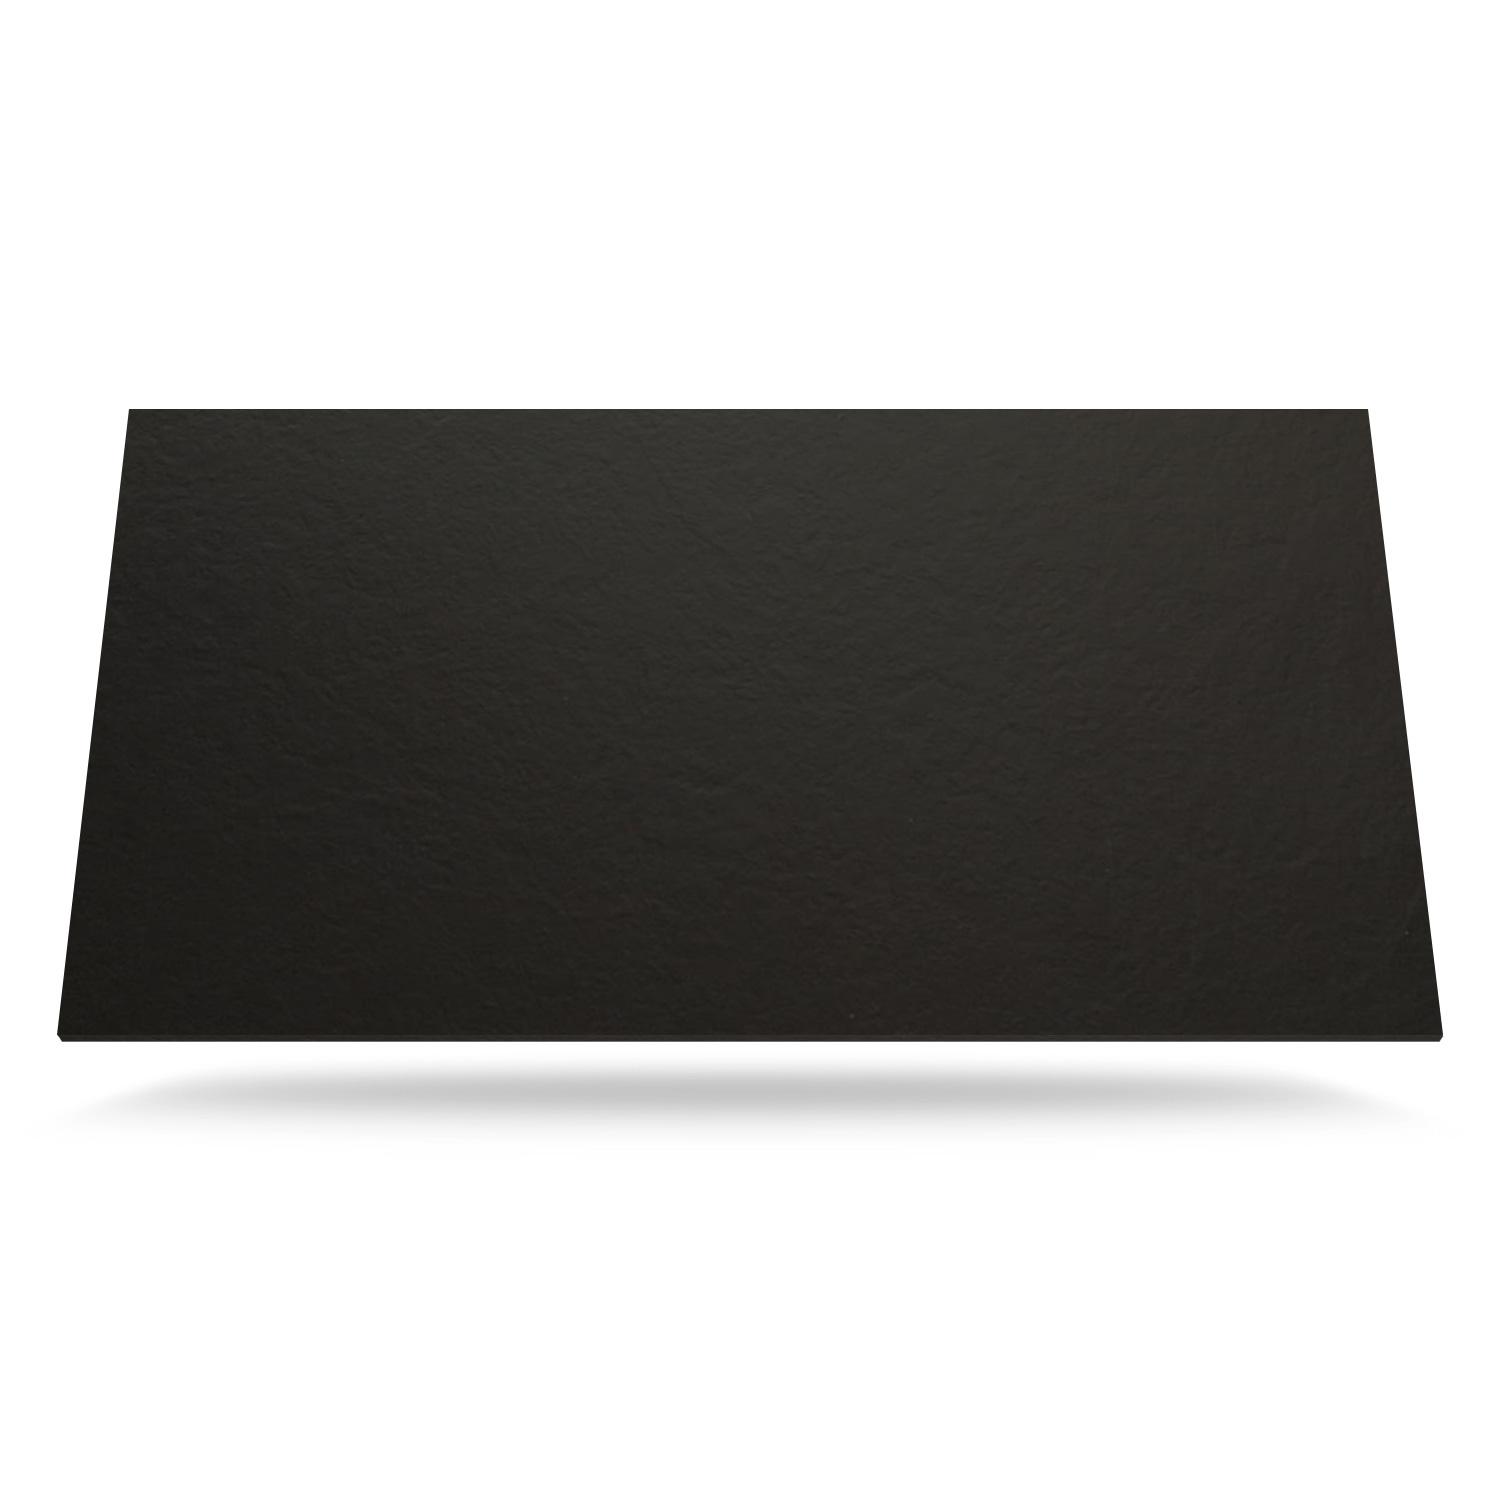 Mørkegrå Farve med Tekstureret - Laminat bordplade på mål - 2207